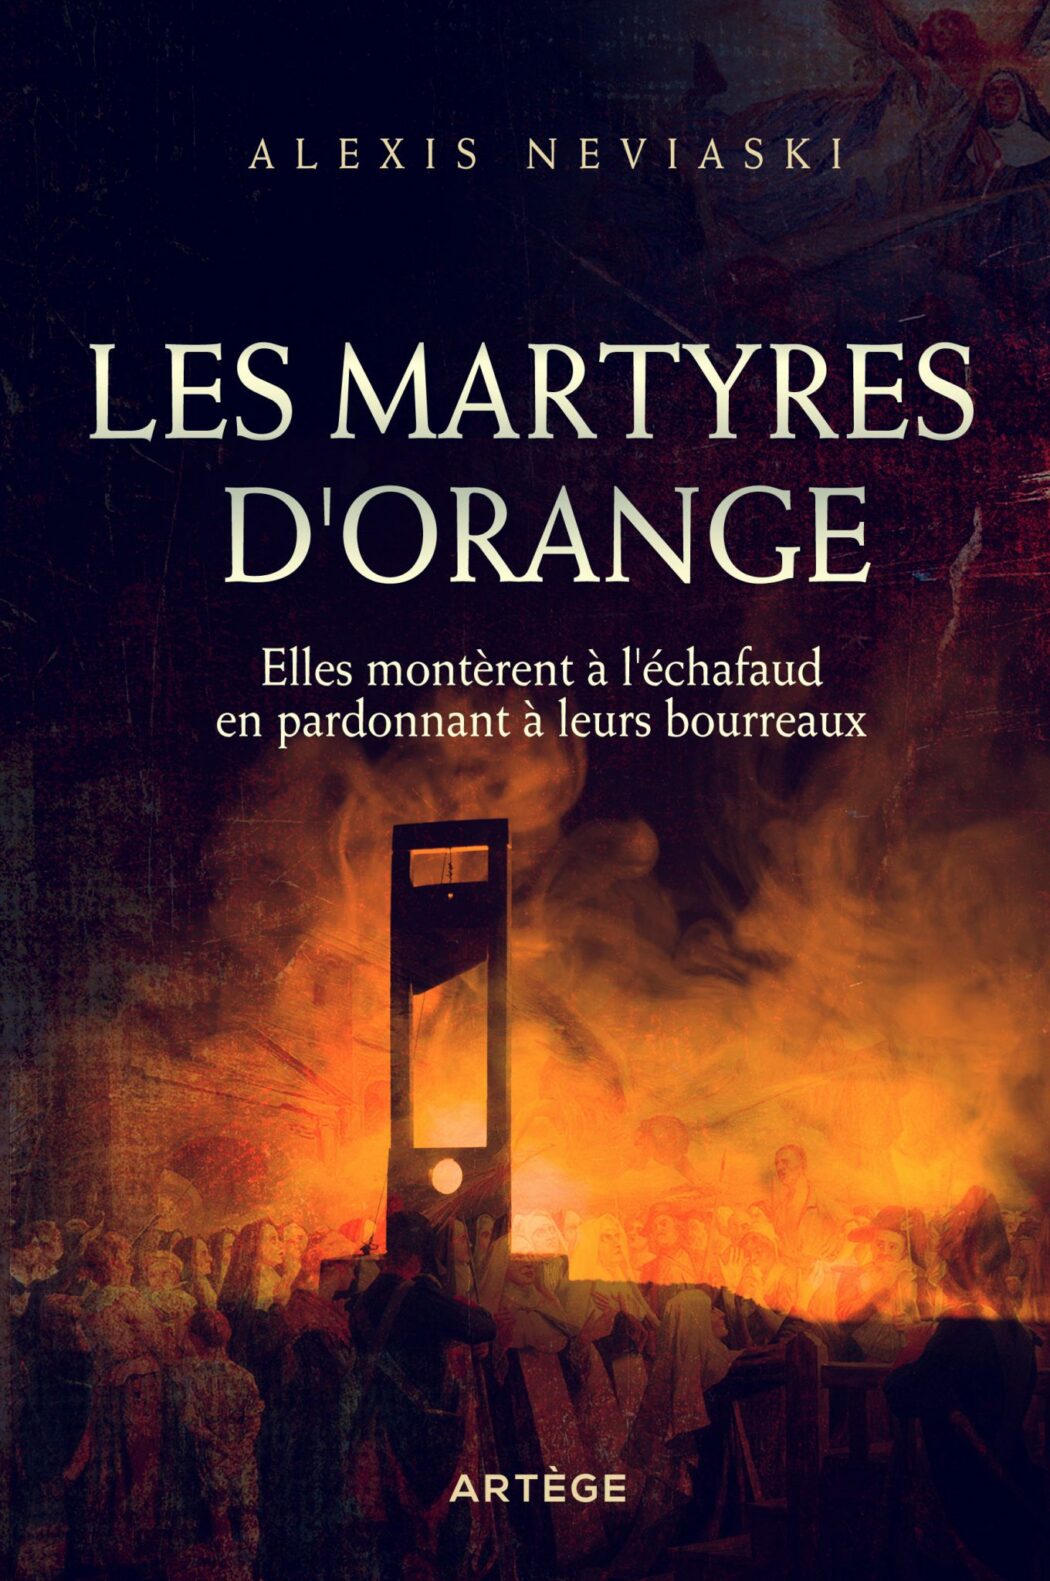 Le livre sur les 32 Bienheureuses martyres d’Orange déjà réédité